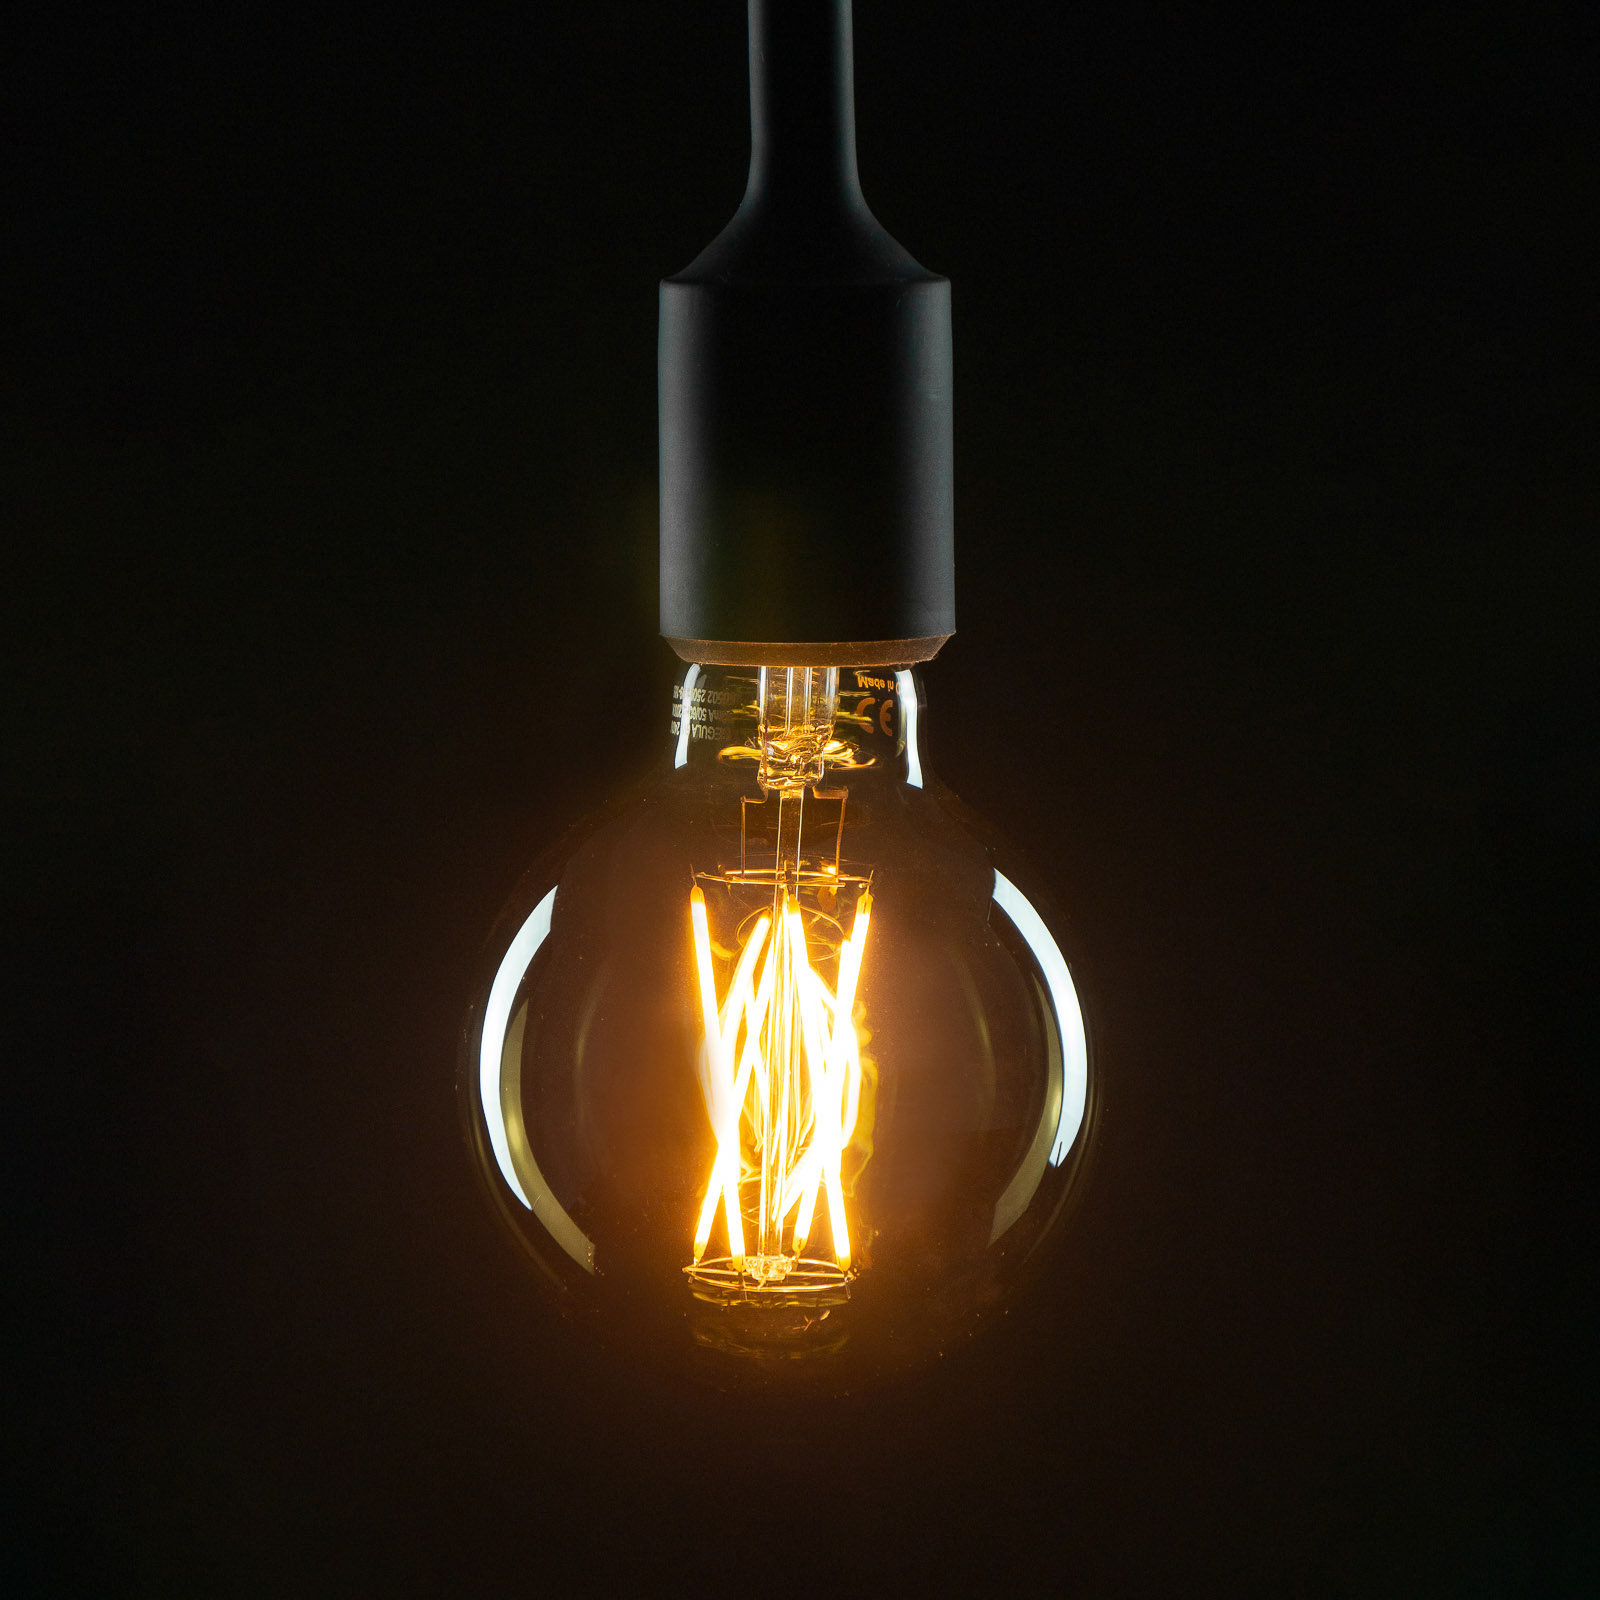 SEGULA LED-Lampe E27 5 W G95 1.900K dimmbar smoke